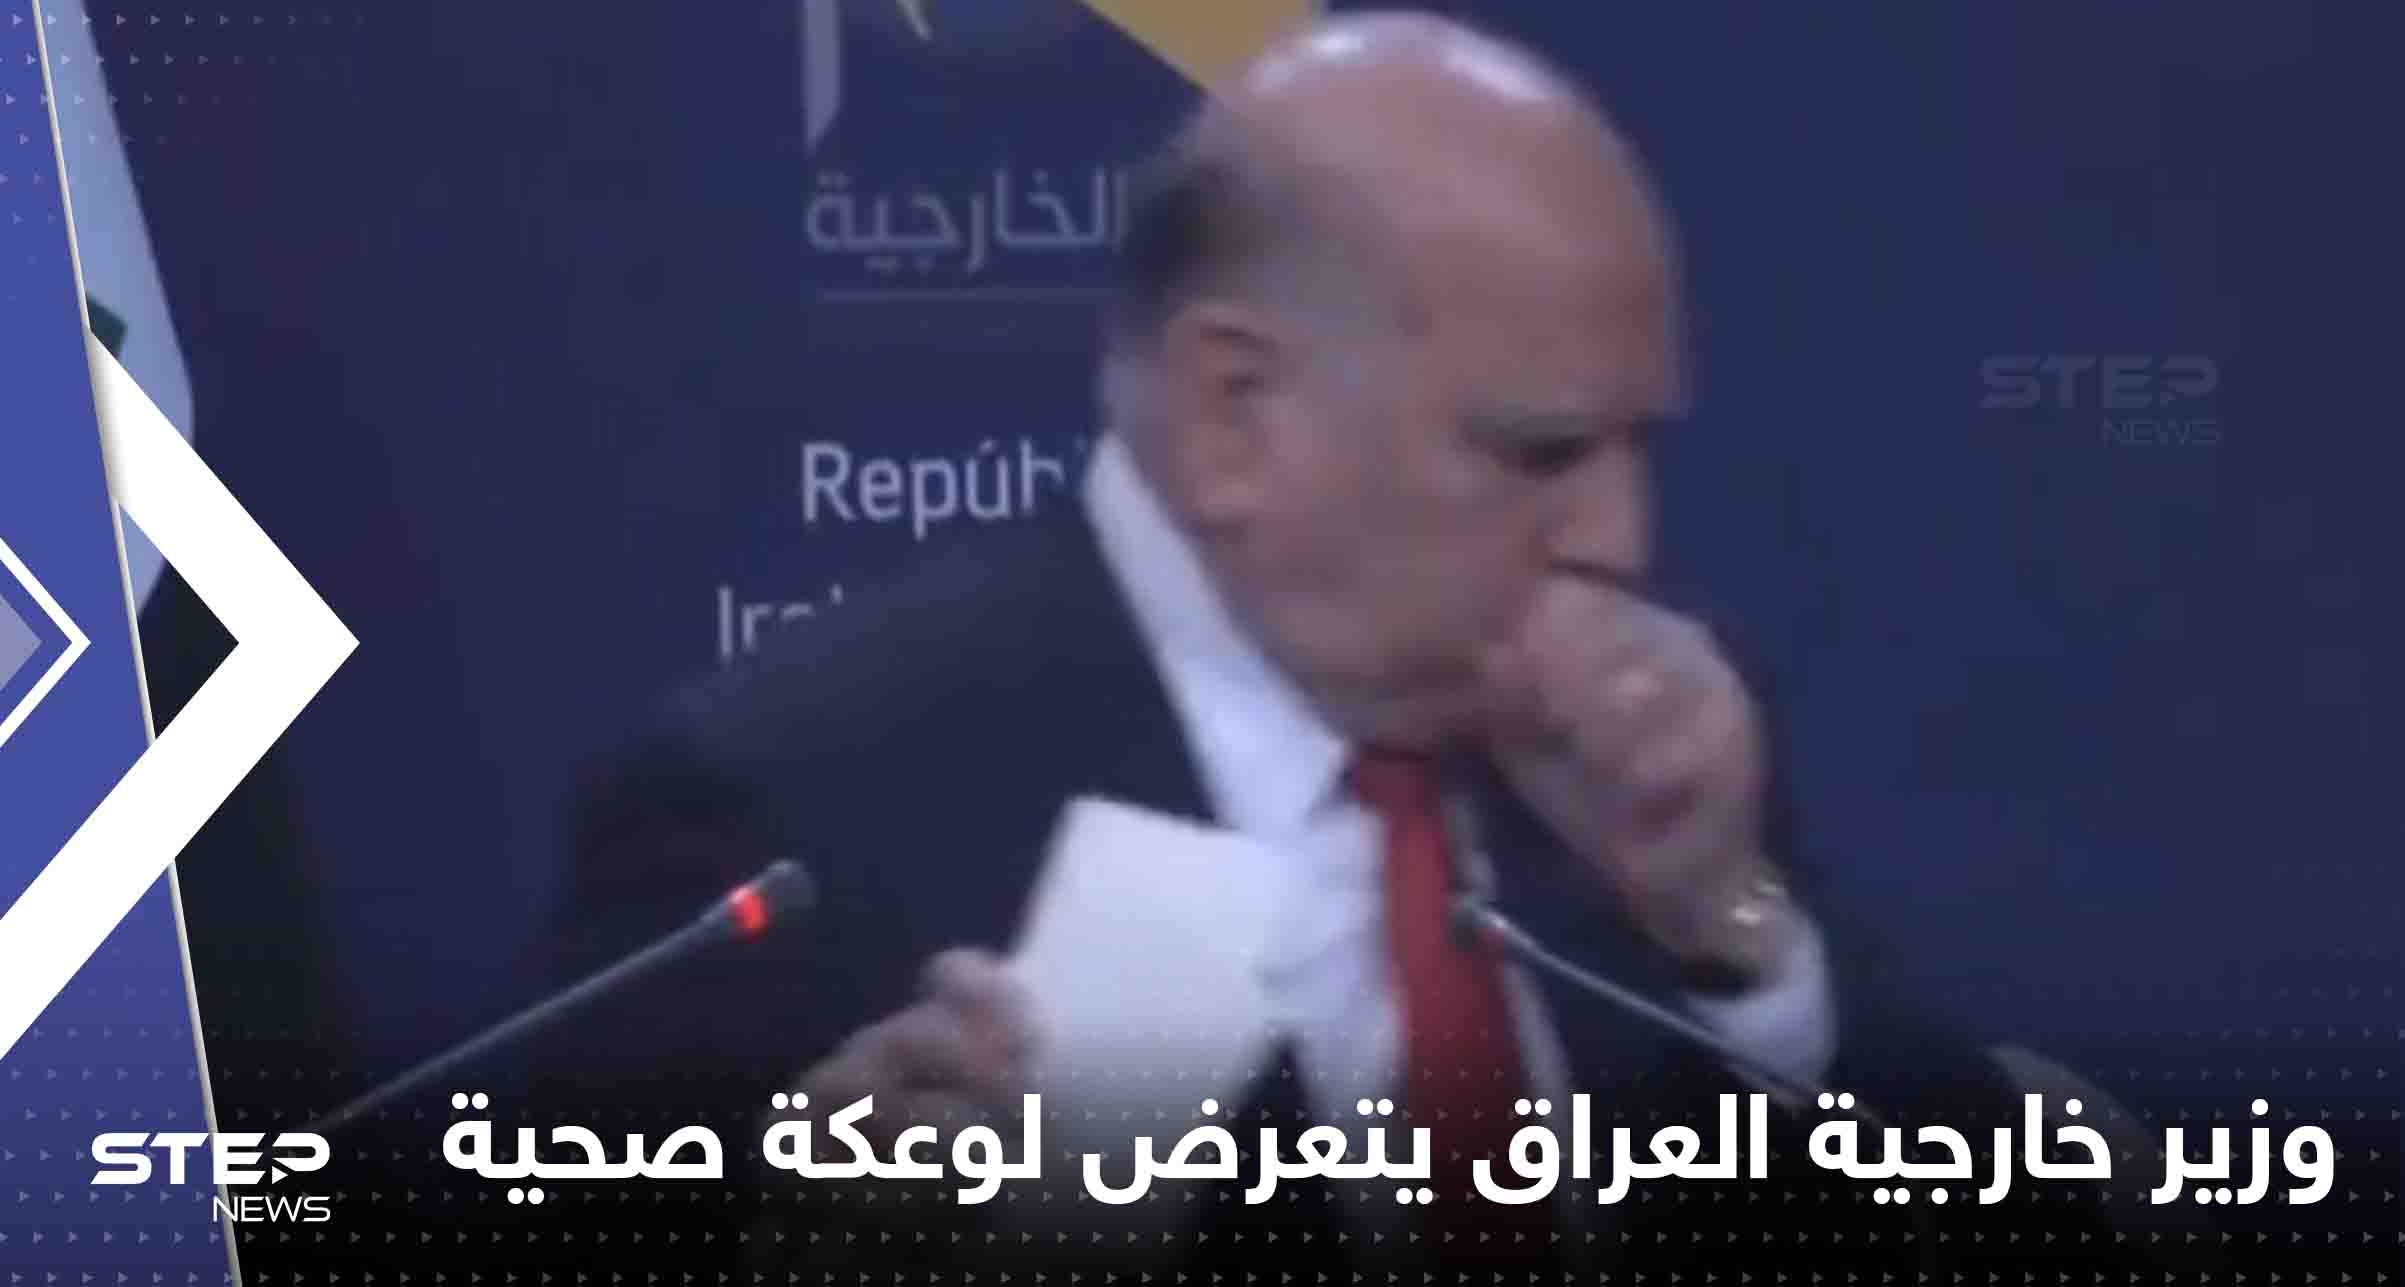 وزير خارجية العراق يتعرض لوعكة صحية على الهواء